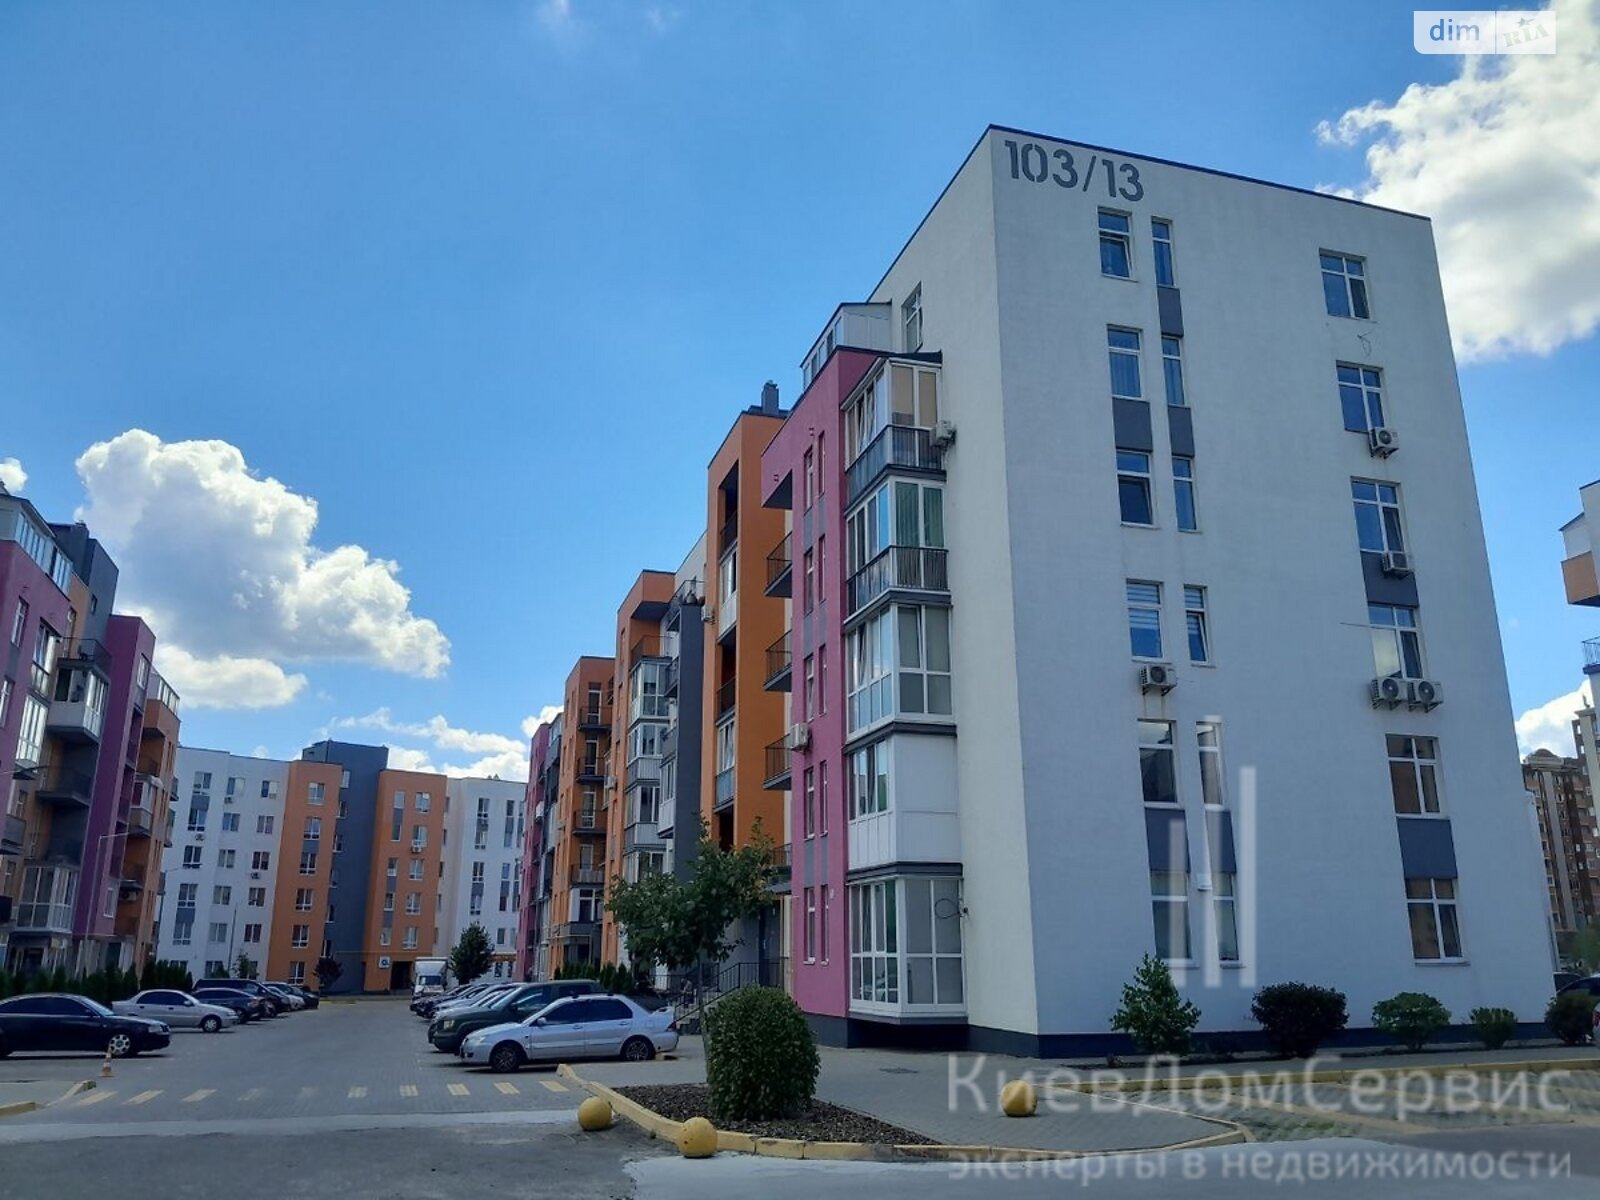 Продаж двокімнатної квартири в Софіївській Борщагівці, на вул. Соборна 103/13, фото 1